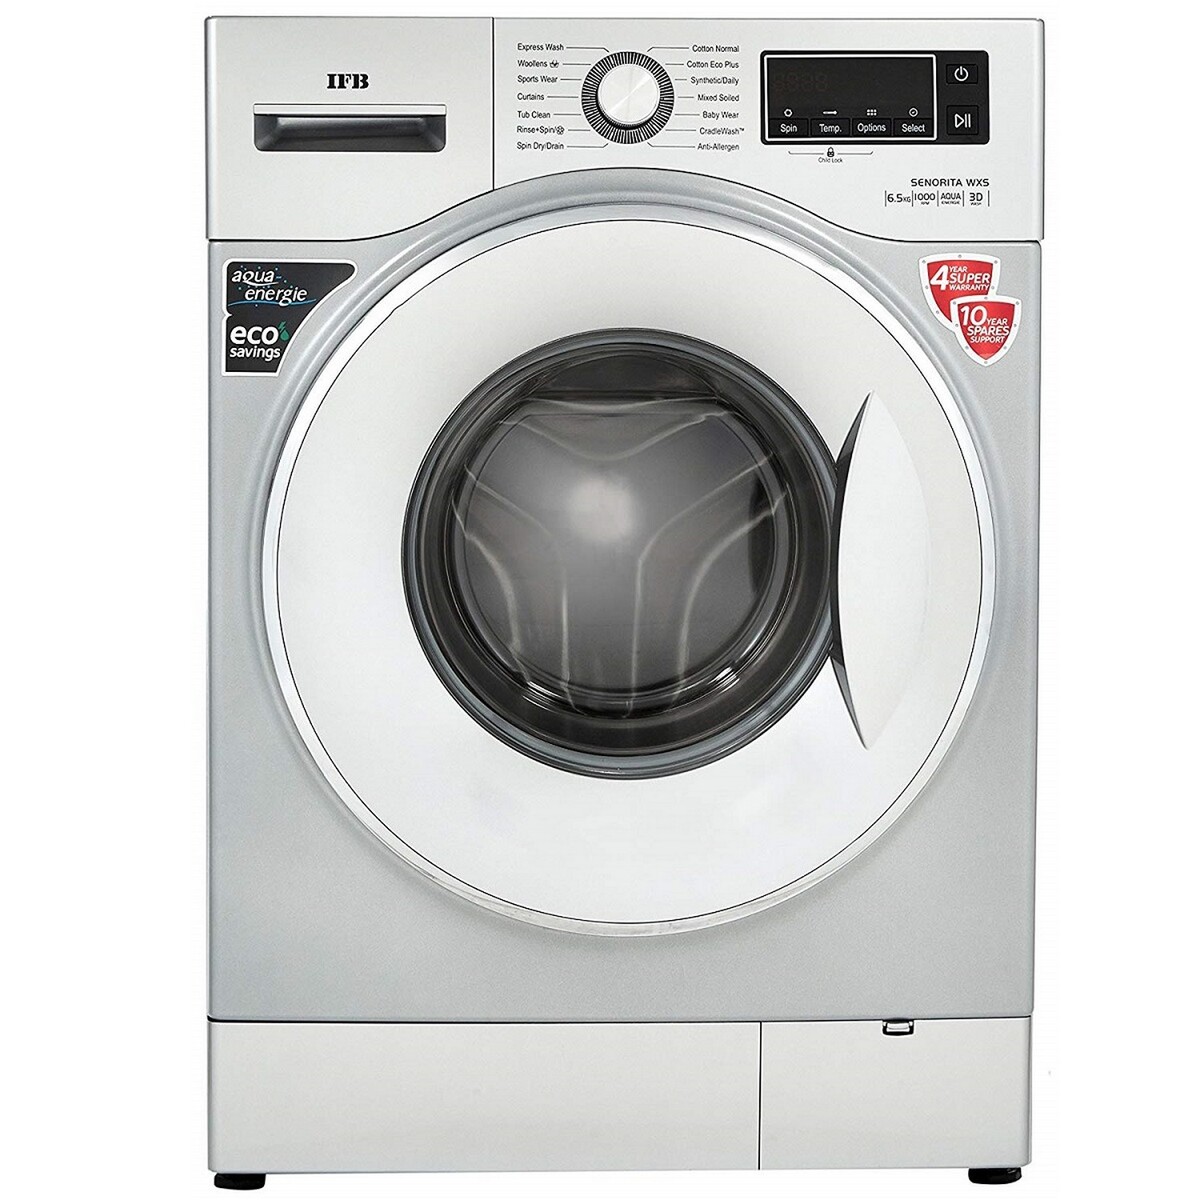 IFB Fully Automatic Washing Machine Senorita Wxs 6.5Kg